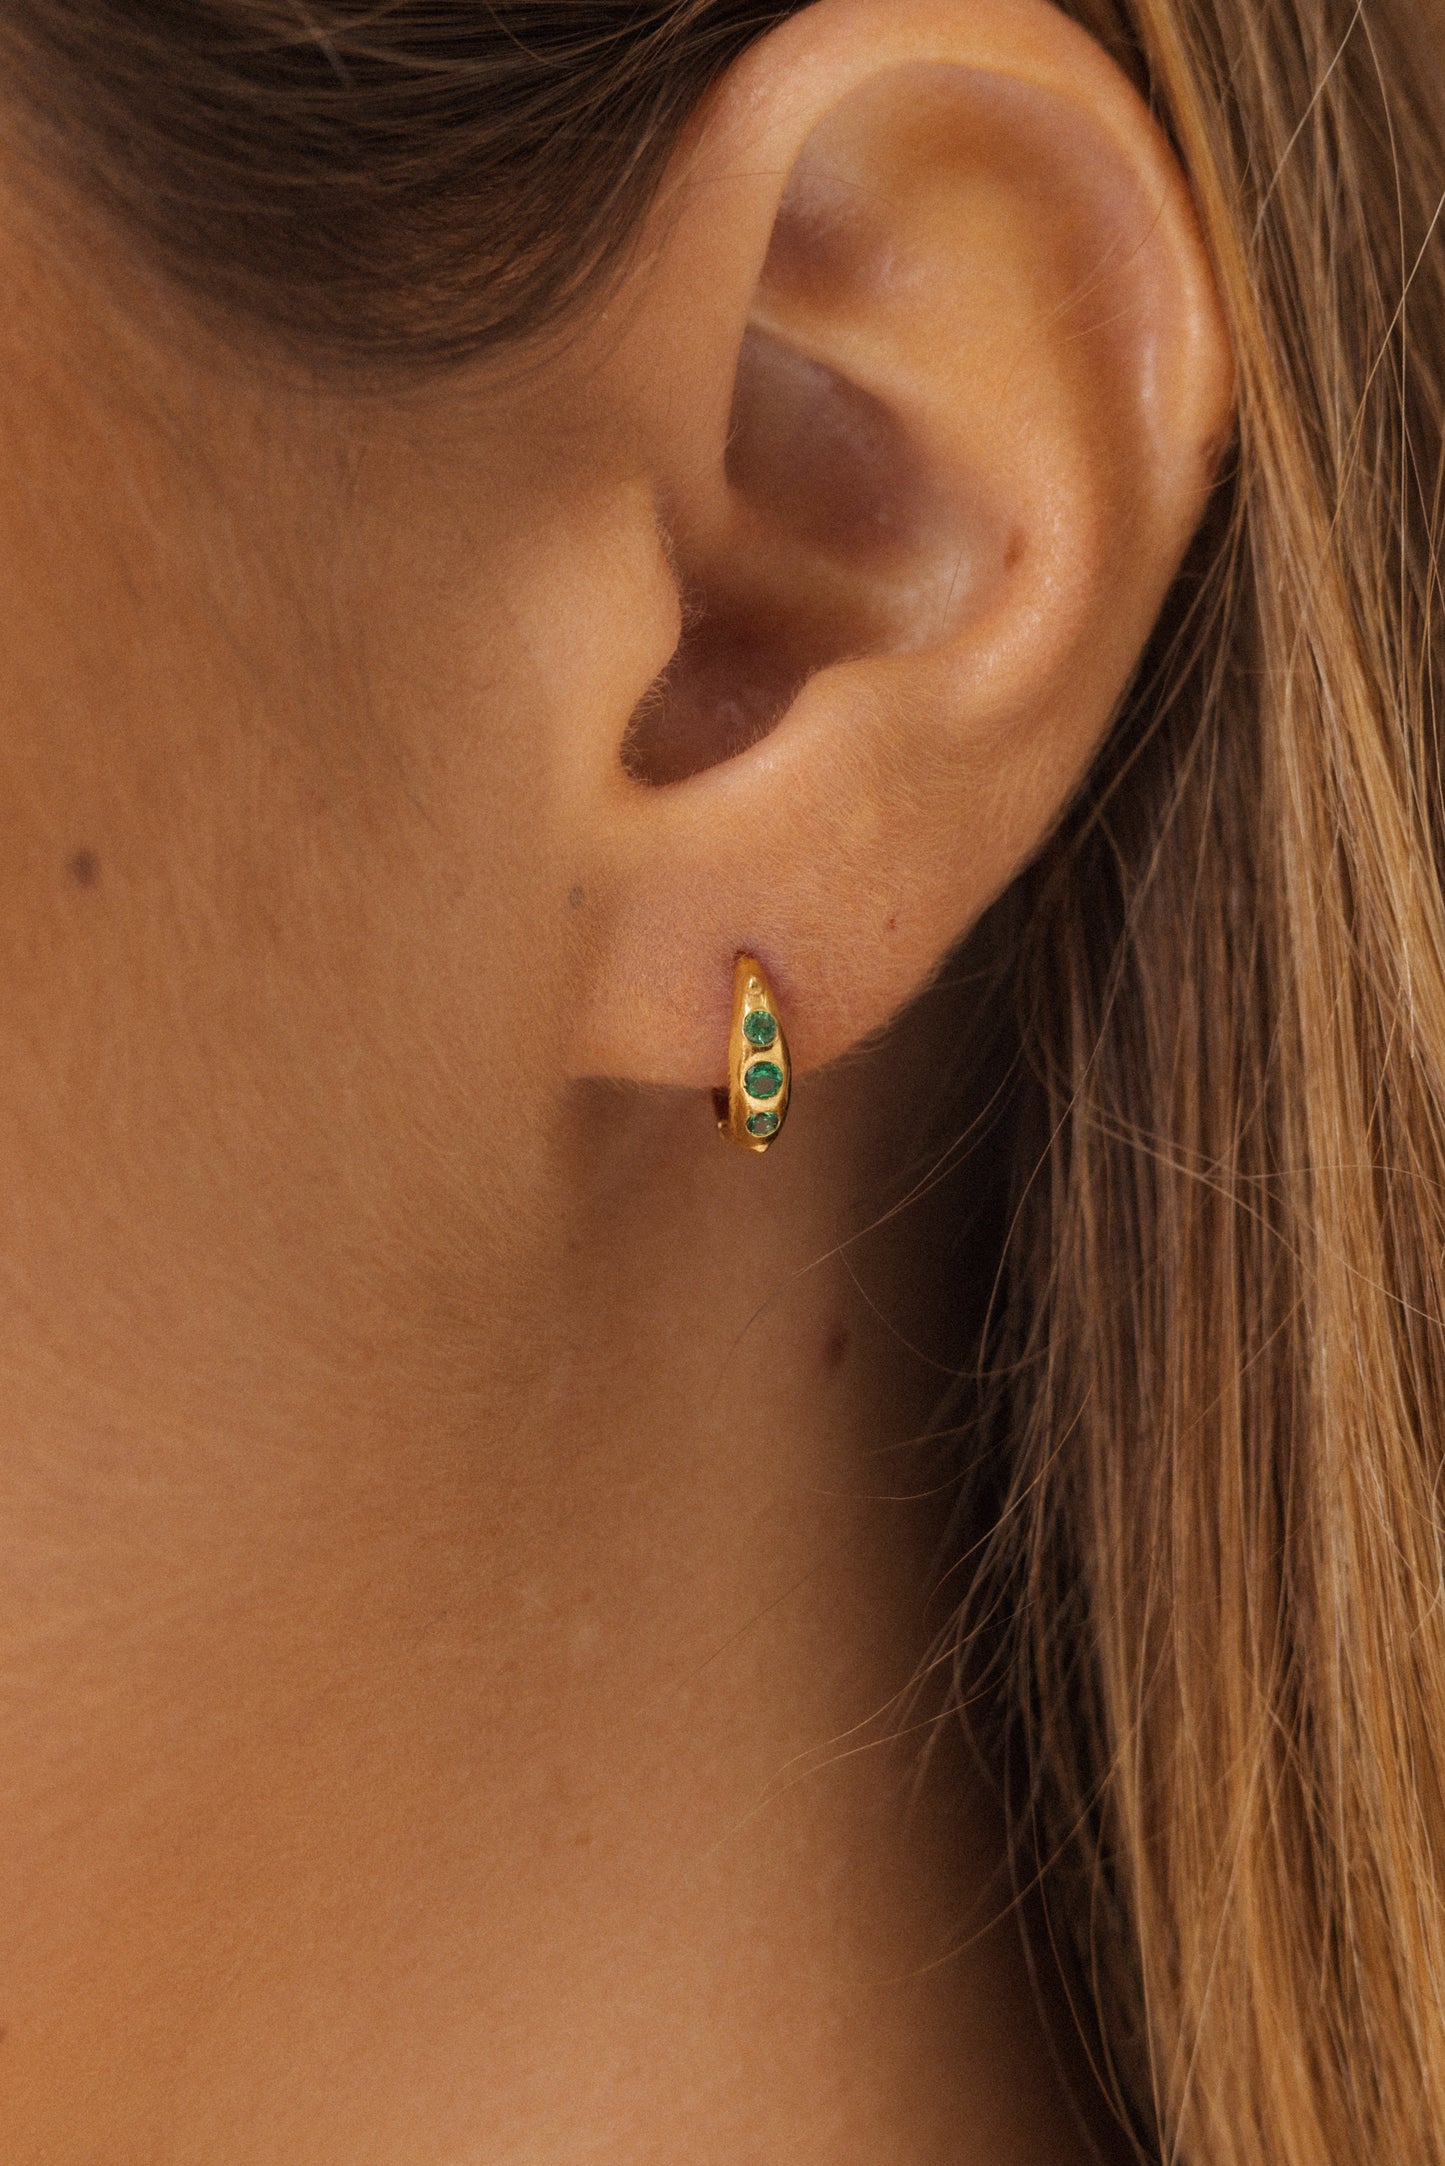 Riley earrings